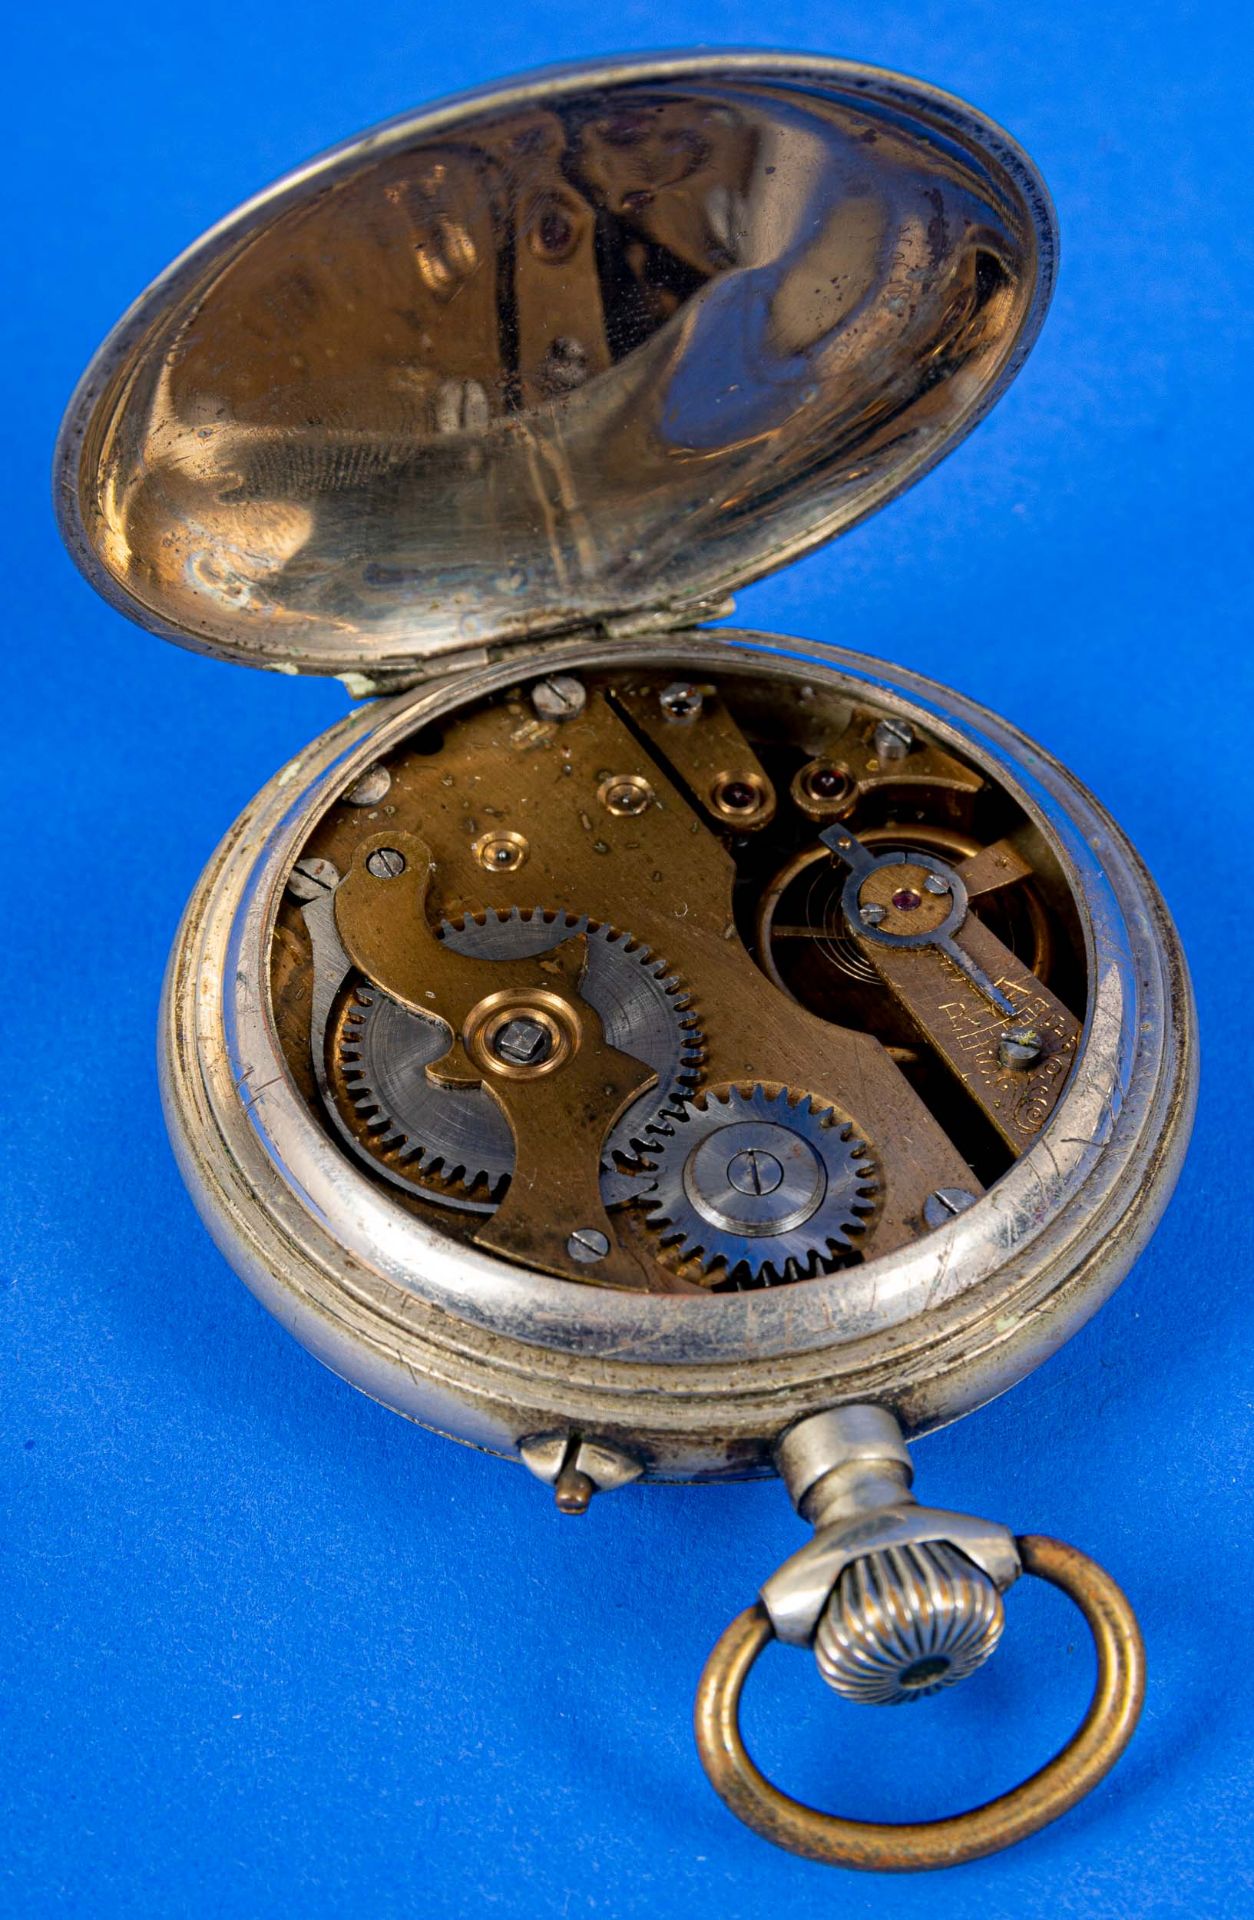 4teilige Sammlung Roßkopf'scher Patent-Taschenuhren, Ende 19. bzw. Anfang 20. Jhdt., versch. Alter, - Bild 3 aus 14